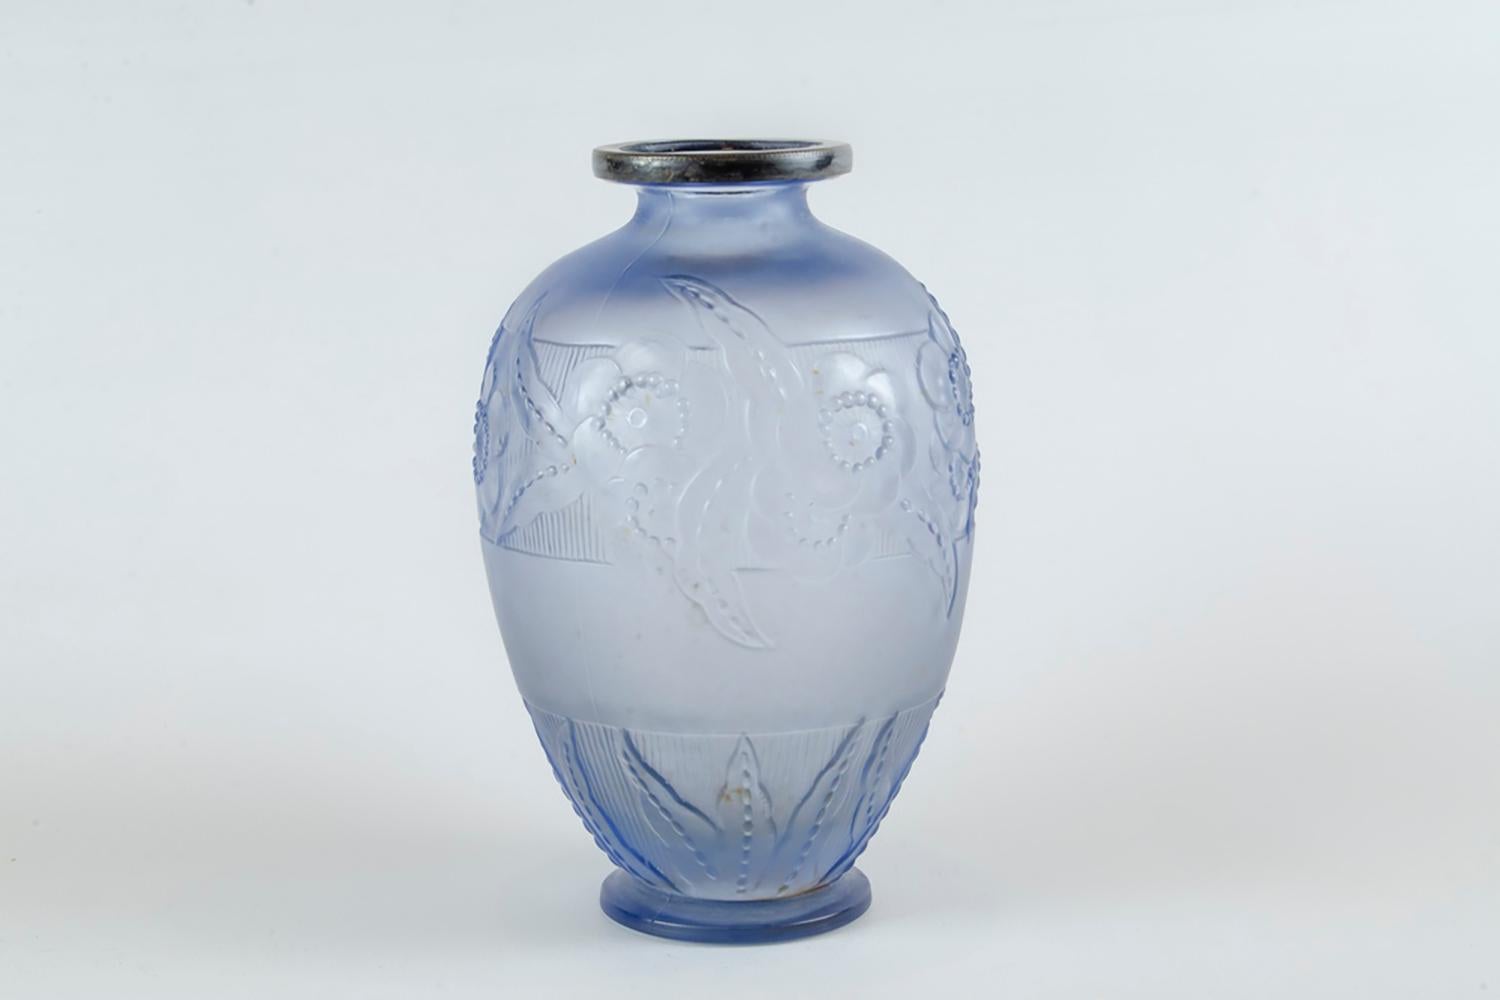 Vase en verre Art déco de Sabino
Marius Ernest Sabino est né en Sicile (NO AGE) en 1878 et s'installe à l'âge de 4 ans en France avec sa famille.

Il étudie à l'École nationale des arts décoratifs et des beaux-arts de Paris, où il est émerveillé par